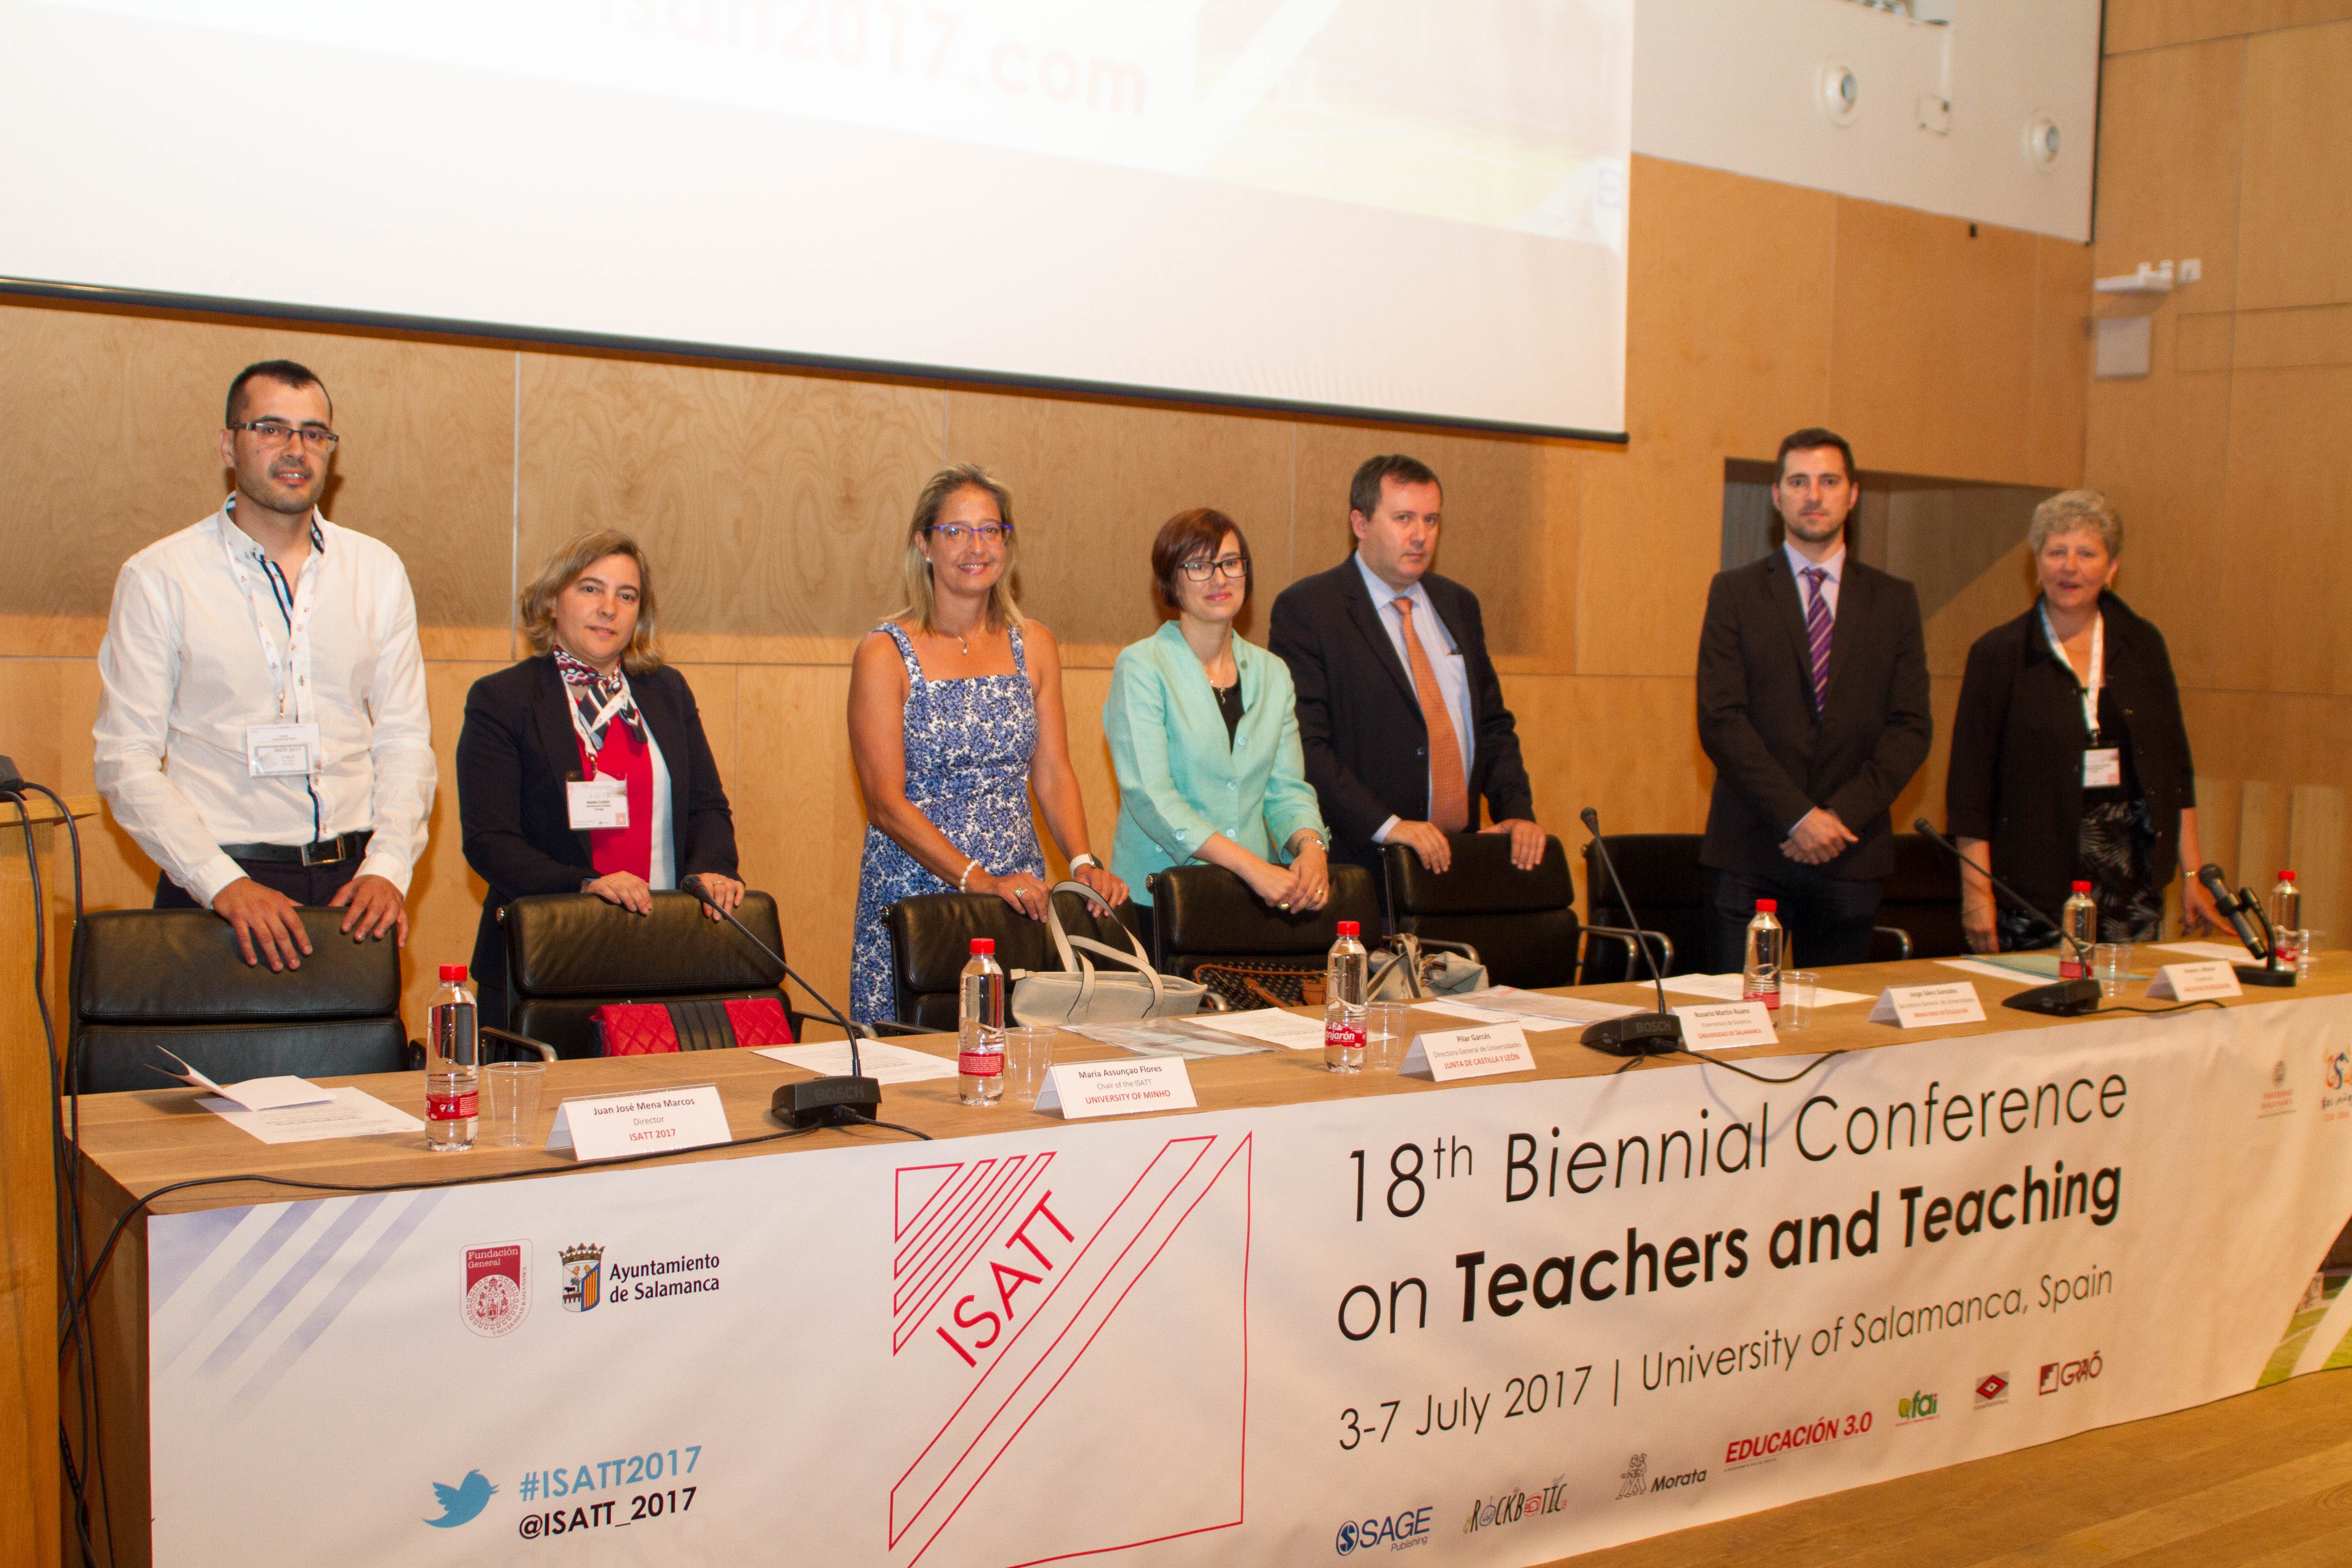 La vicerrectora de Docencia de la Universidad de Salamanca inaugura la XVIII Conferencia Bienal sobre Profesores y Enseñanza